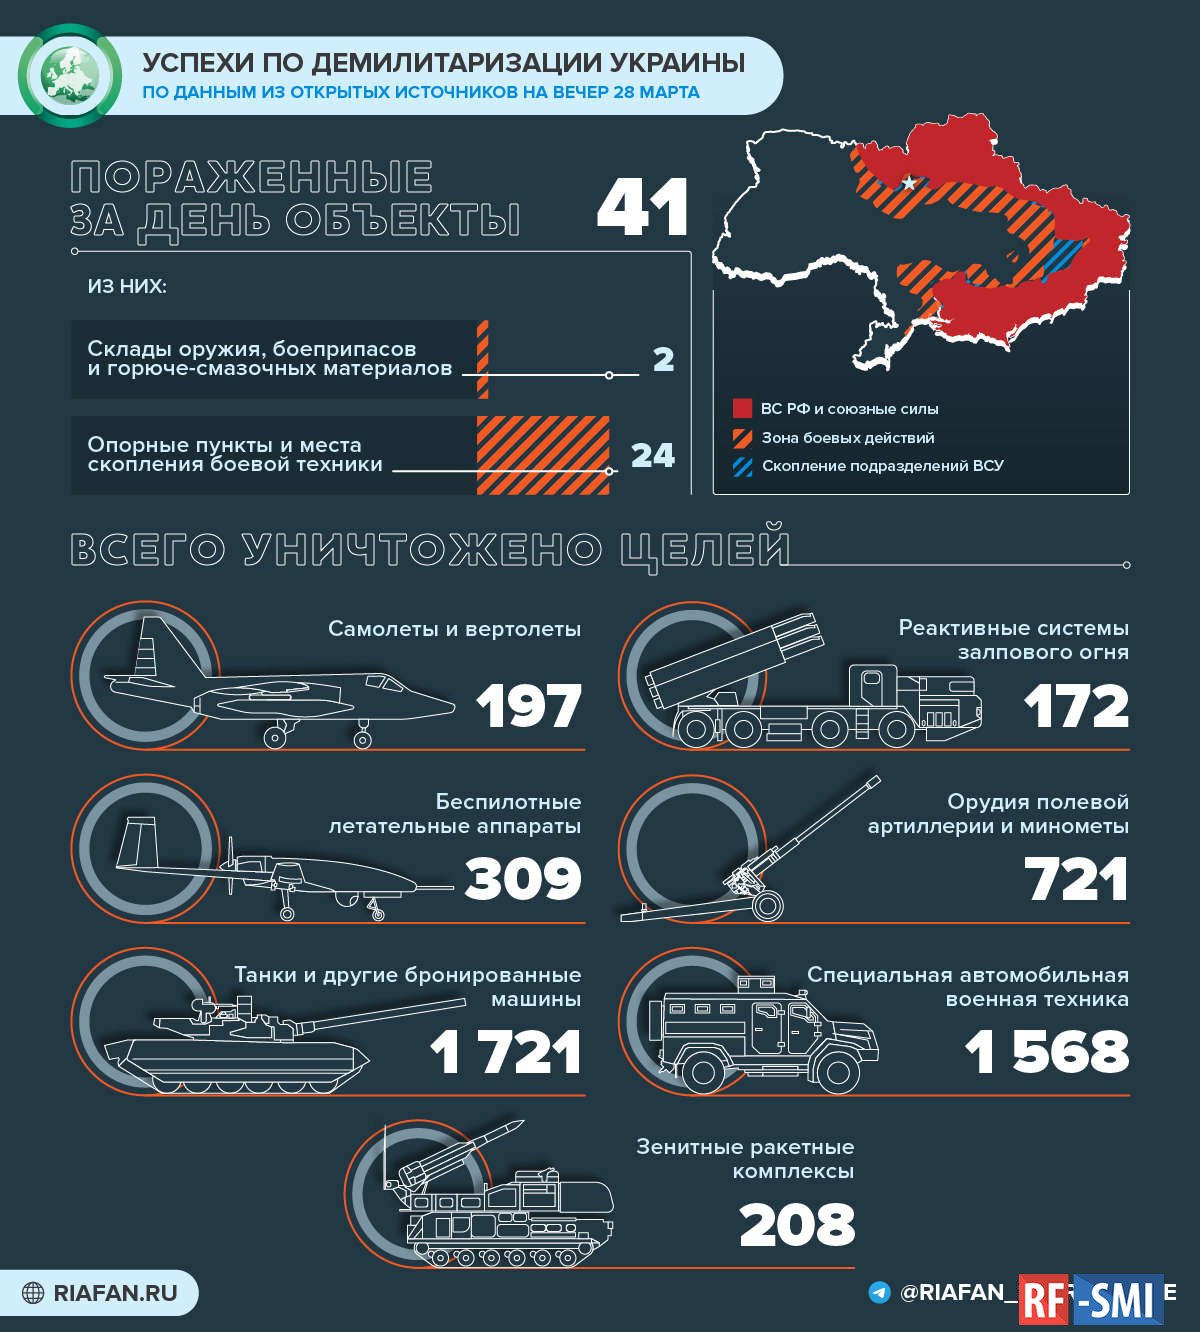 Количество погибших на украине официальные данные. Поставки оружия на Украину инфографика. Потери Украины инфографика. Потери украинских войск 2022 инфографика.